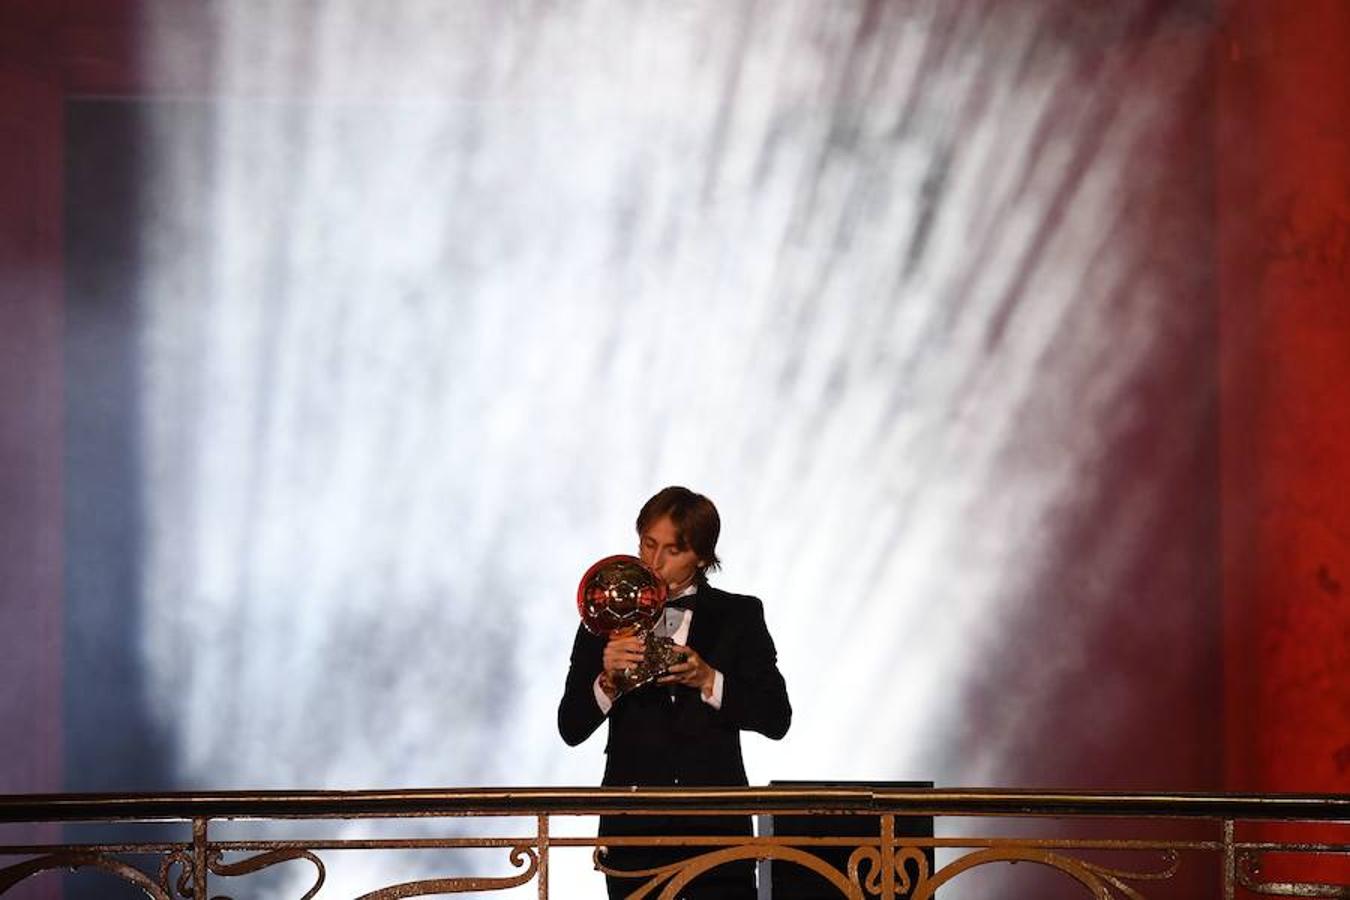 El croata Luka Modric se lleva el Balón de Oro. Por primera vez en diez años no es Cristiano Ronaldo niLionel Messi el ganador. 